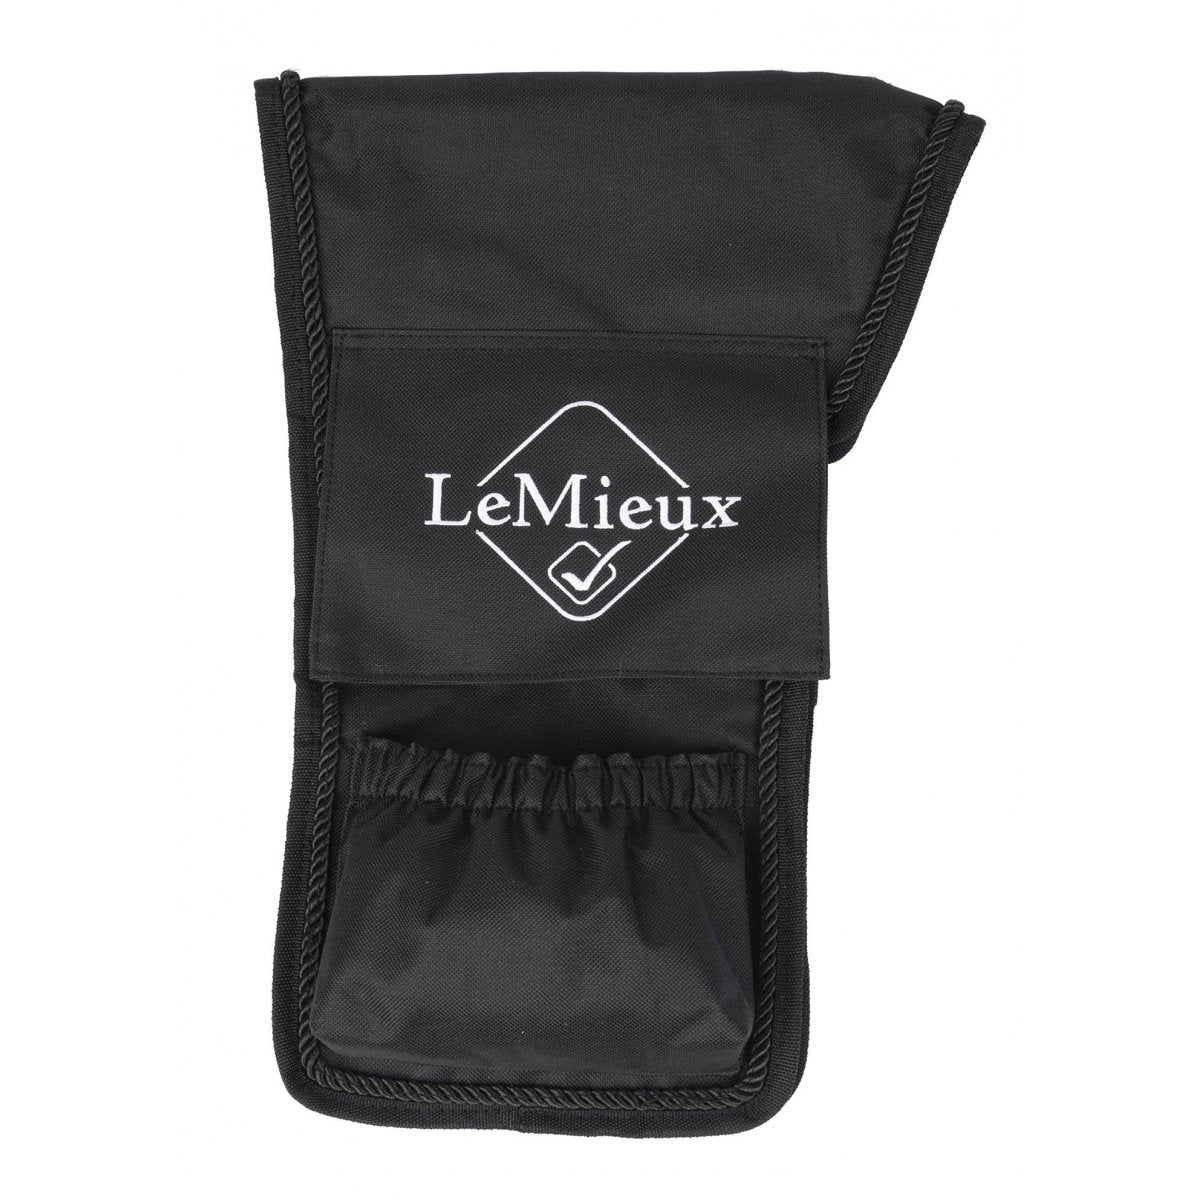 Black LeMieux branded stirrup leathers storage bag on white background.